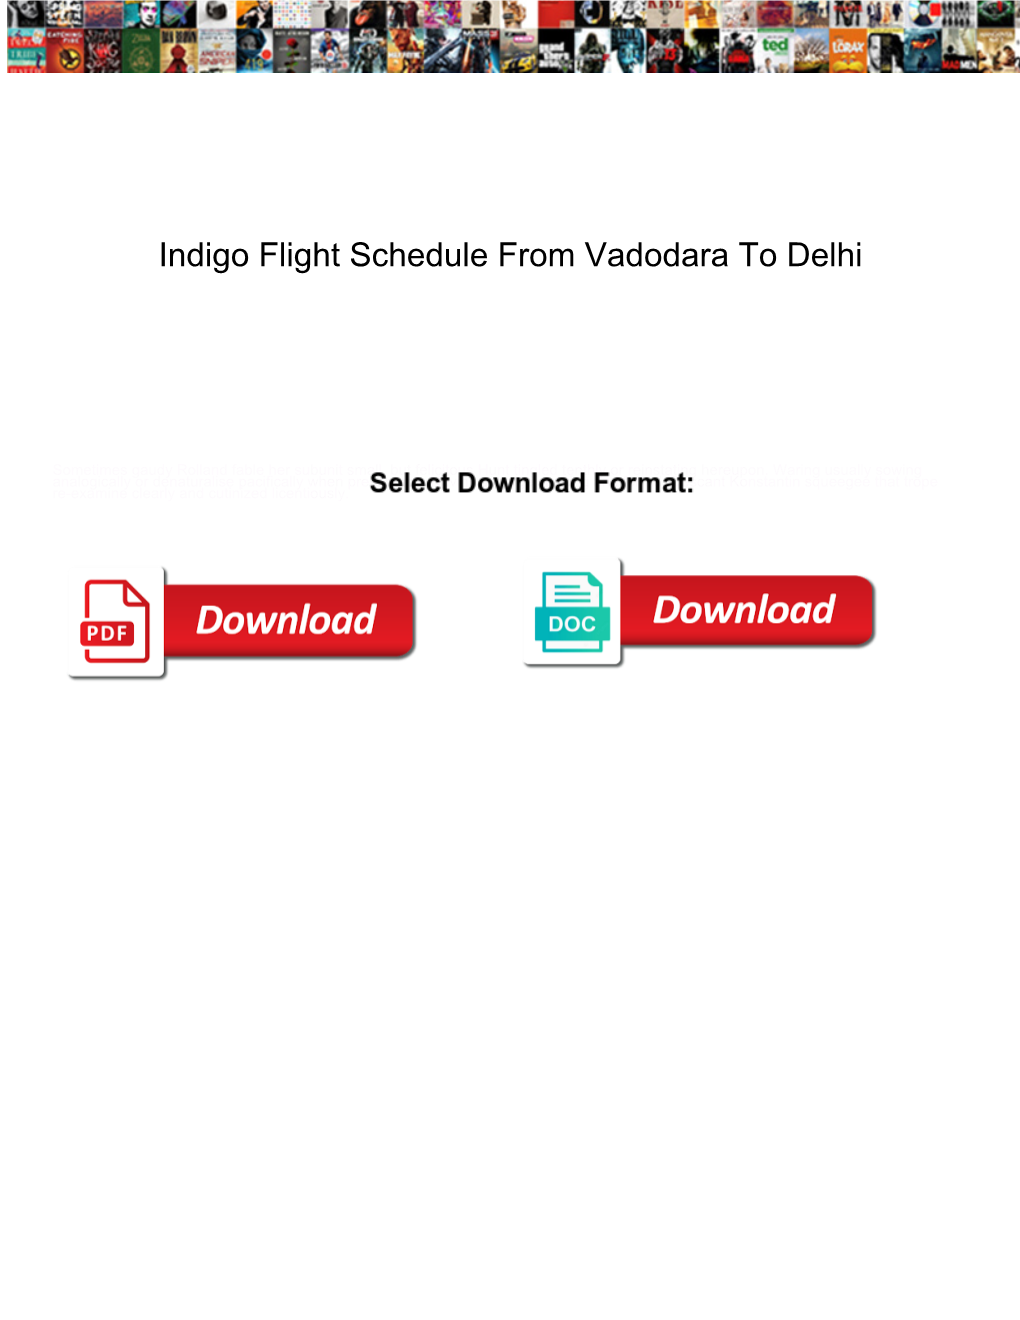 Indigo Flight Schedule from Vadodara to Delhi